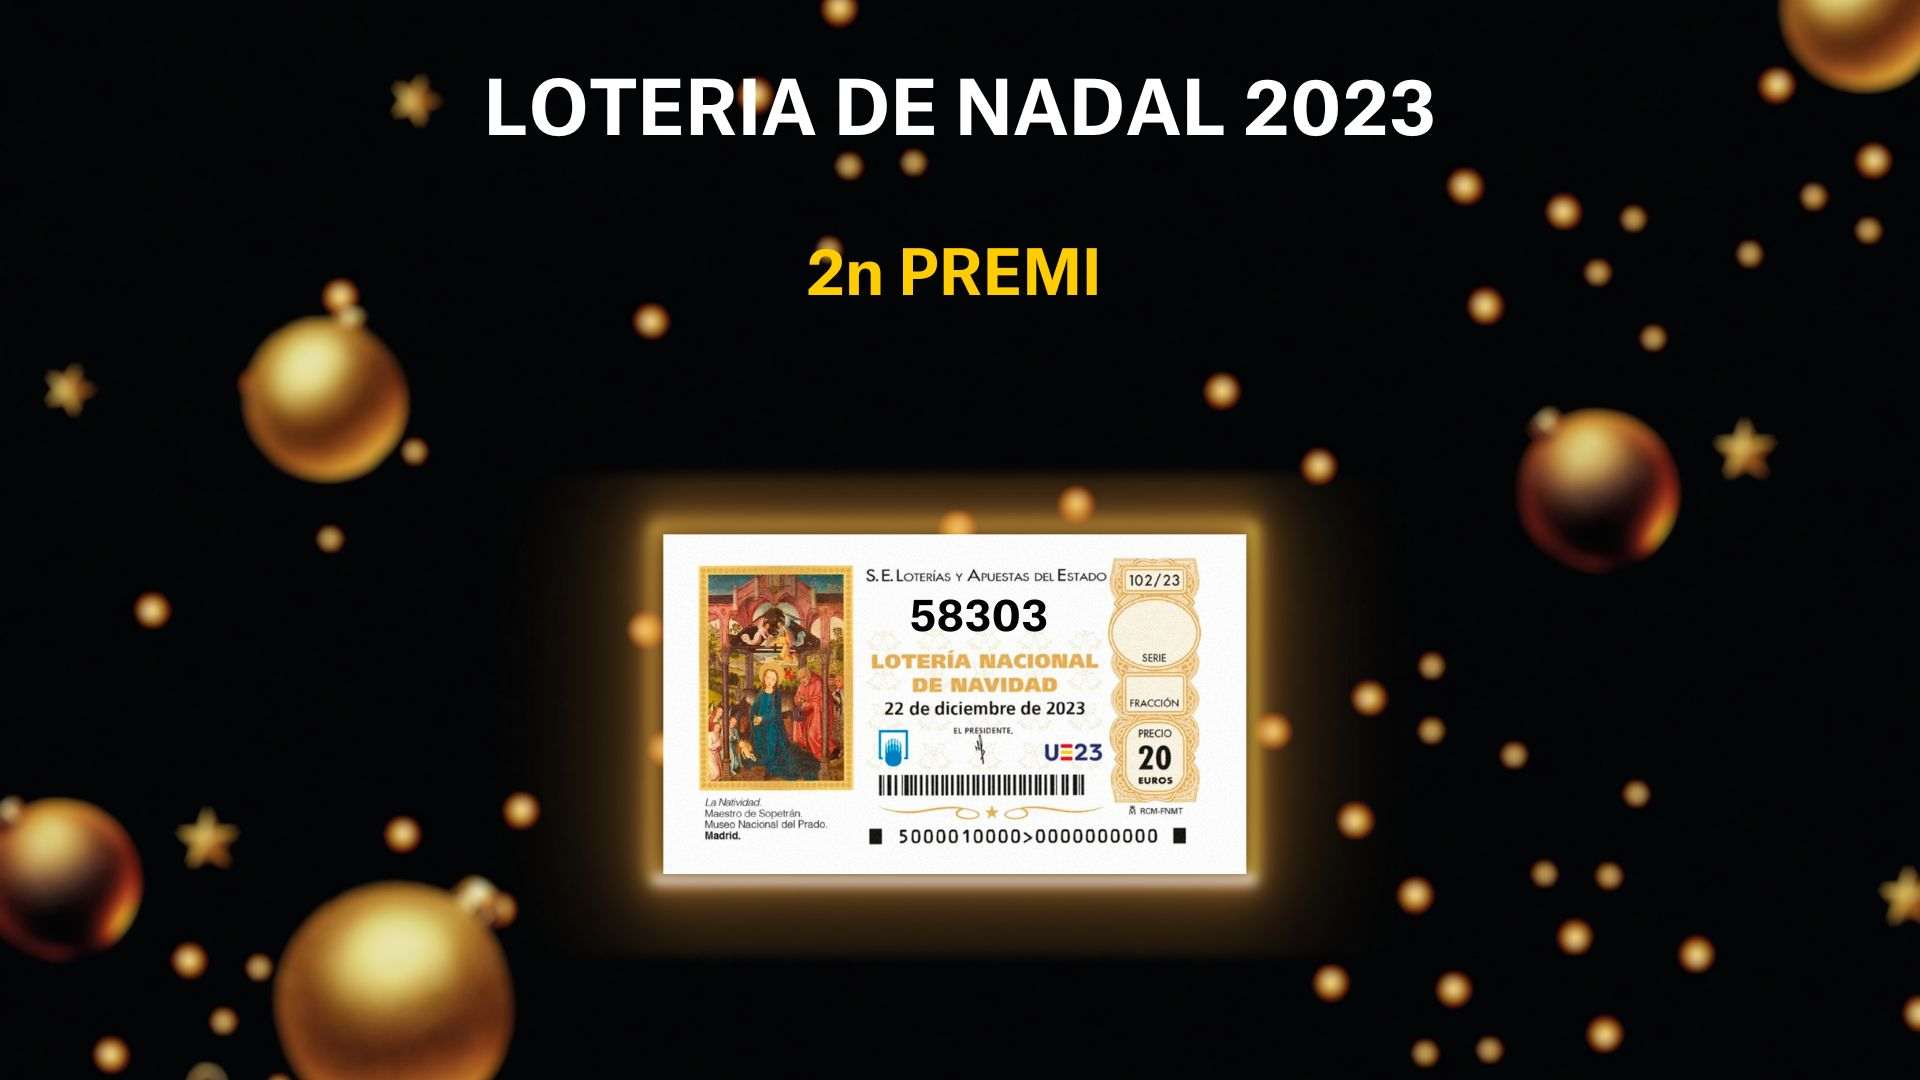 Segon premi de la Loteria de Nadal 2023: 58303